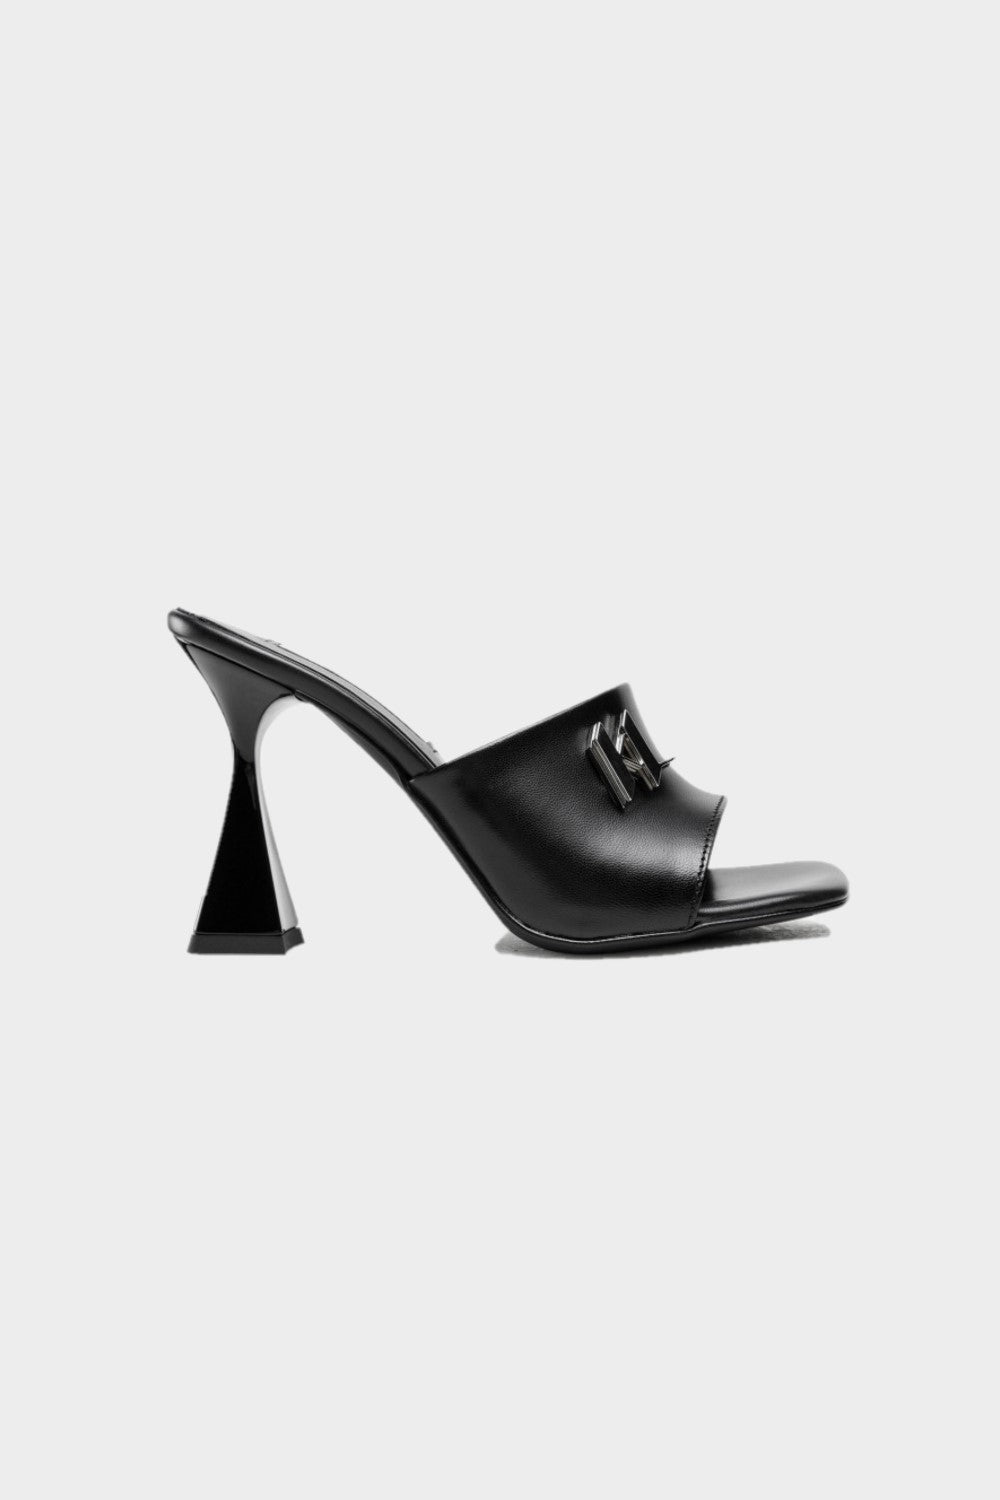 נעלי עקב לנשים בצבע שחור KARL LAGERFELD KARL LAGERFELD Vendome online | ונדום .